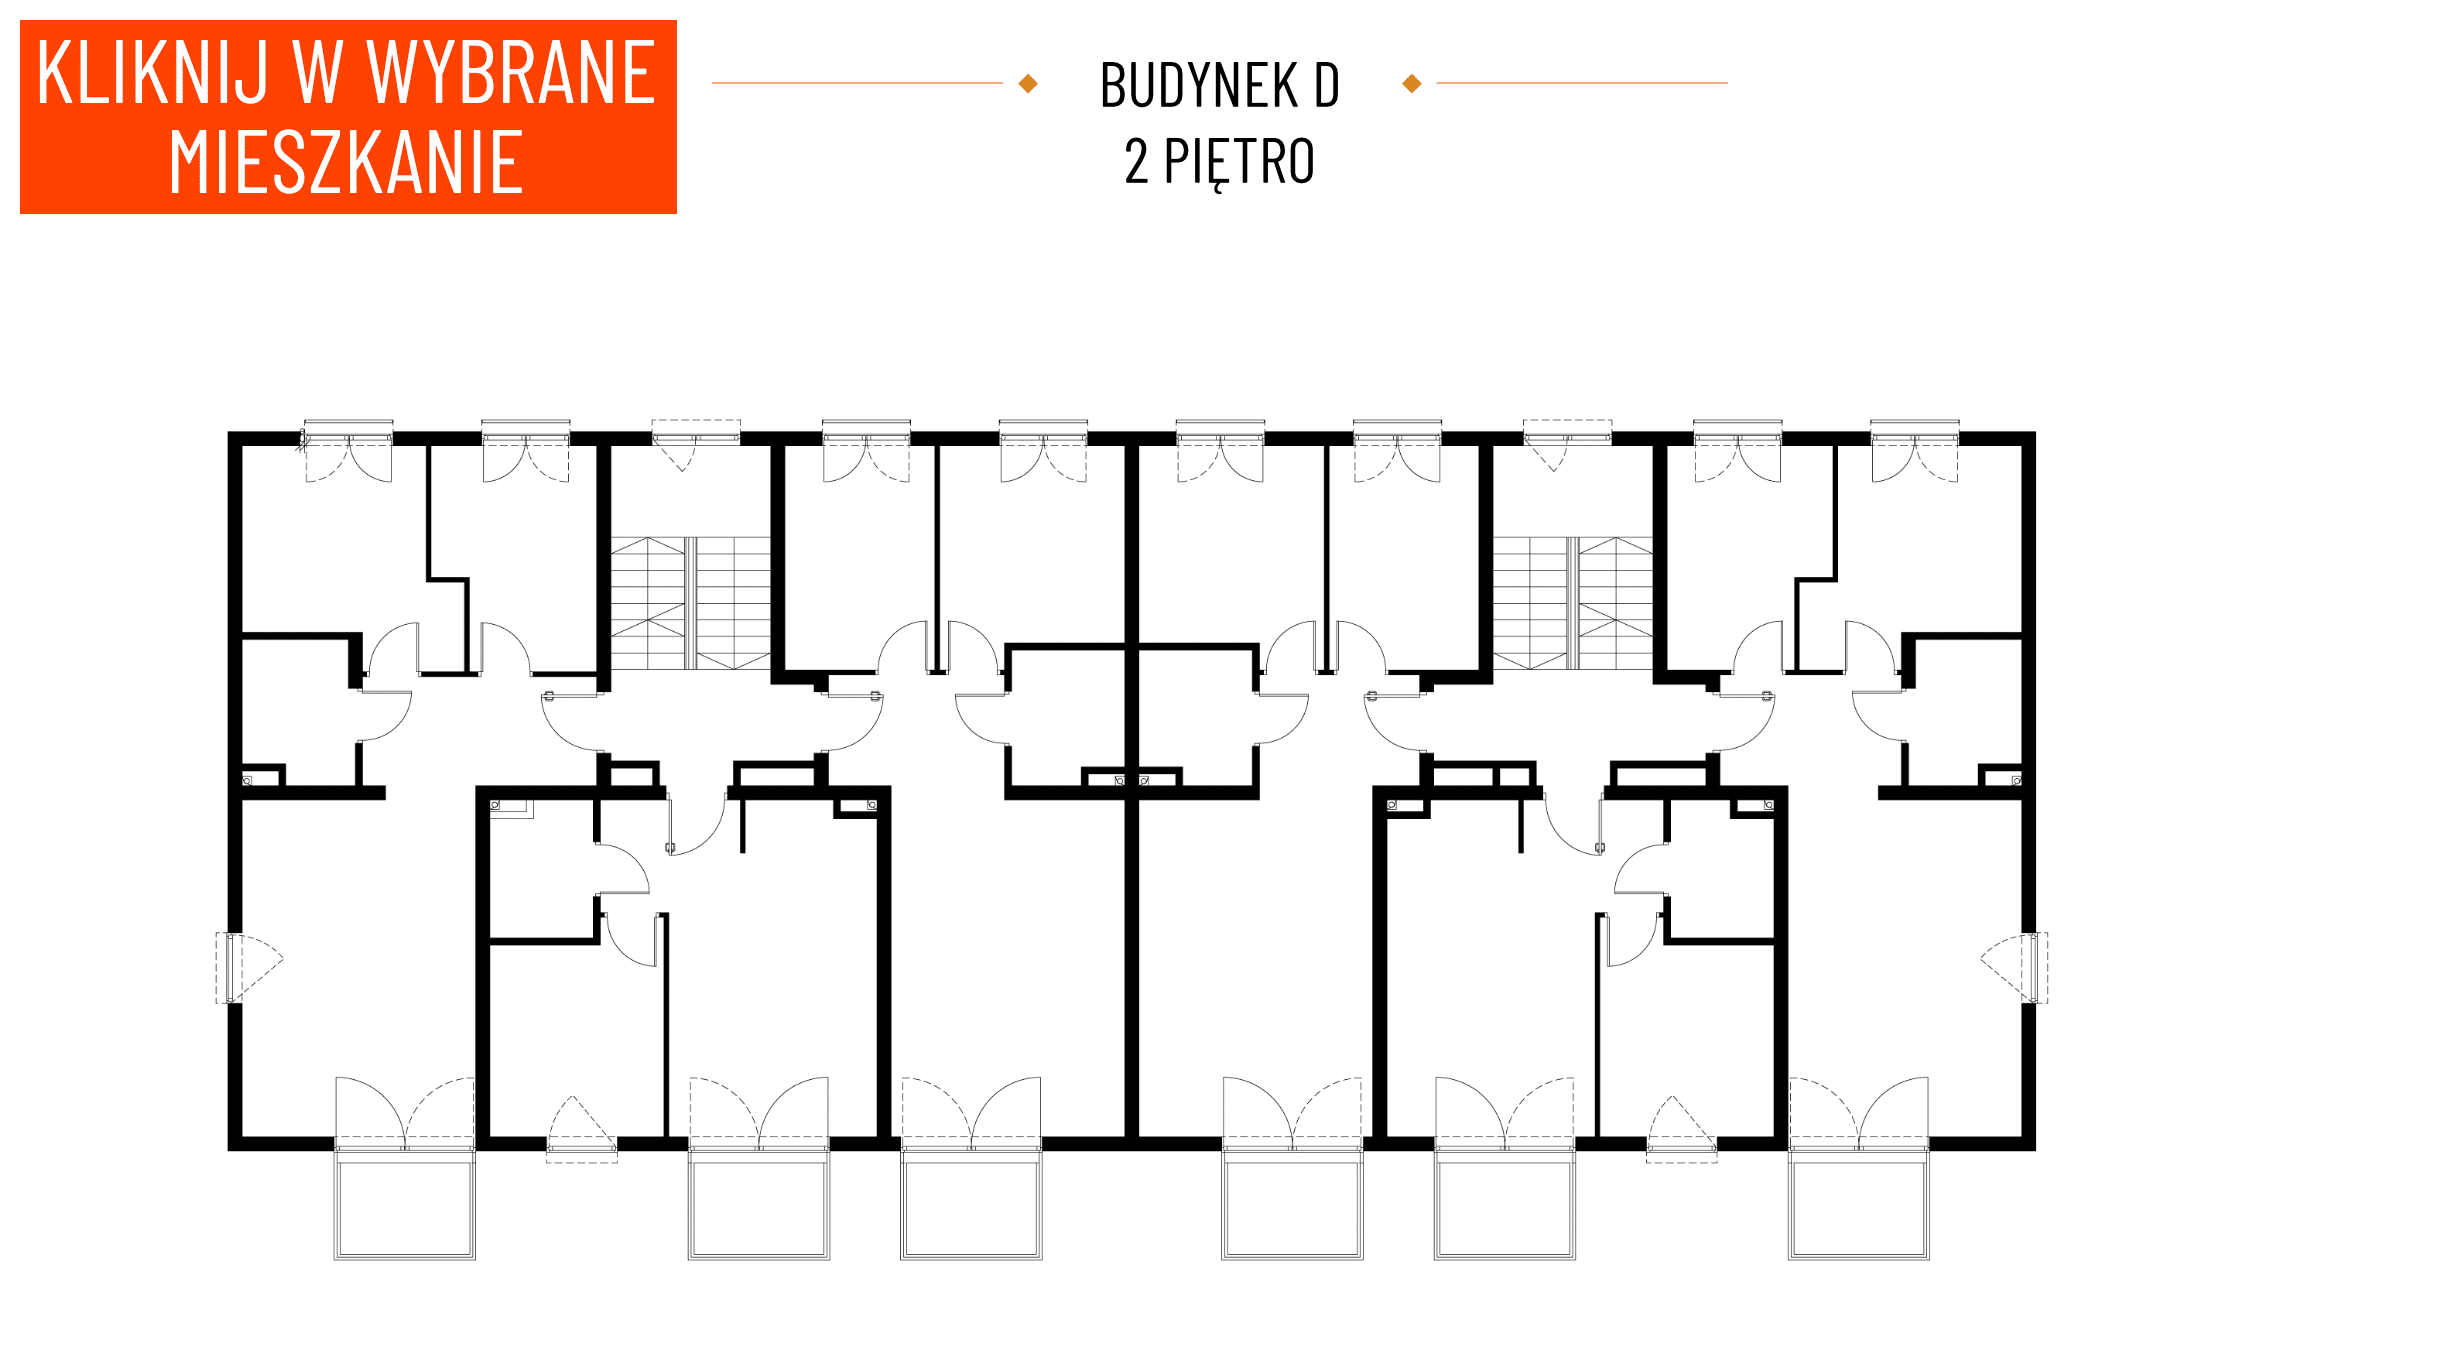 Wyszukiwarka 3D - Budynk D - Piętro 2